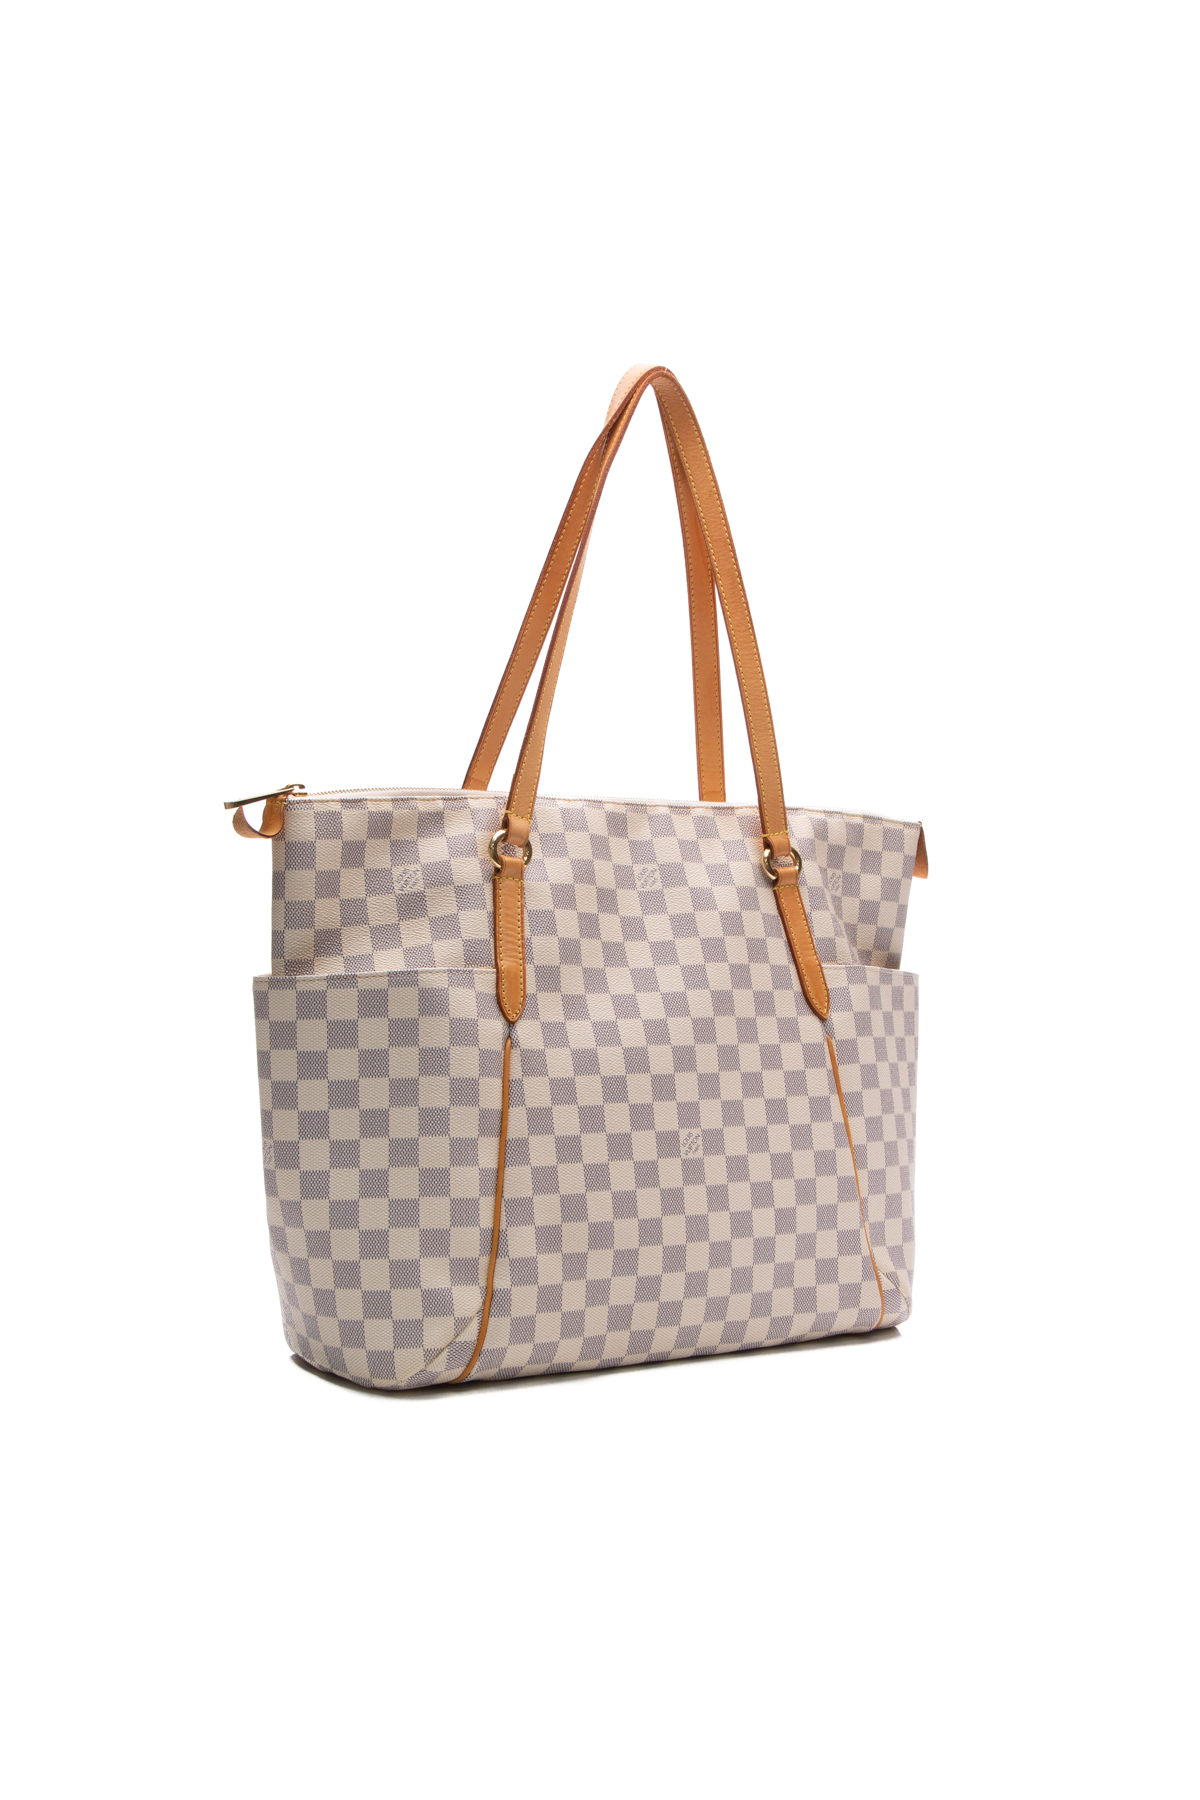 Louis Vuitton, Bags, Louis Vuitton Totally Gm